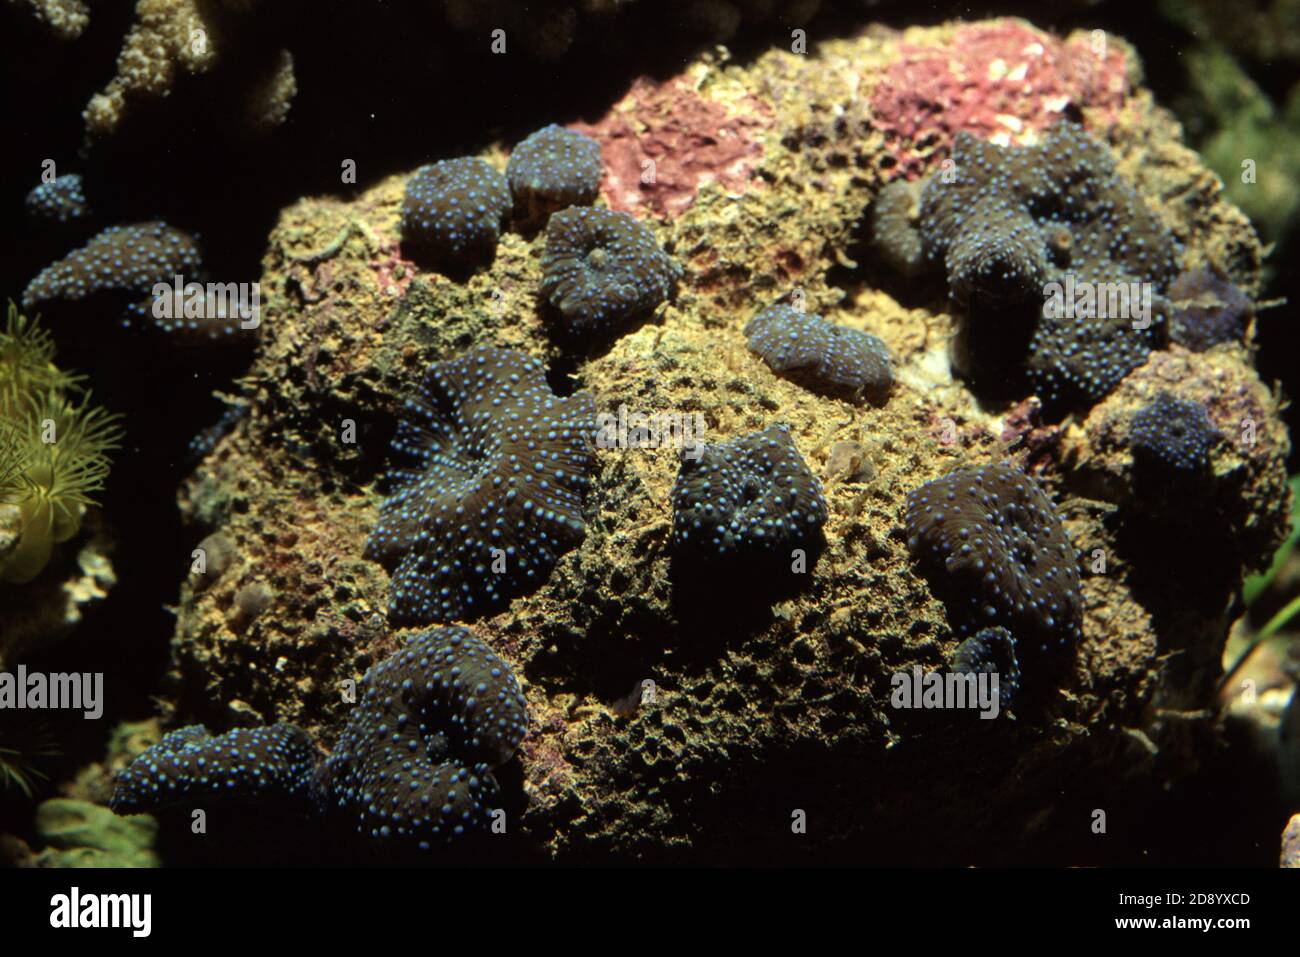 Discosoma es un género de cnidarios del orden Corallimorpharia. Los nombres comunes incluyen la anémona de hongo, la anémona de disco y la seta de oreja de elefante Foto de stock